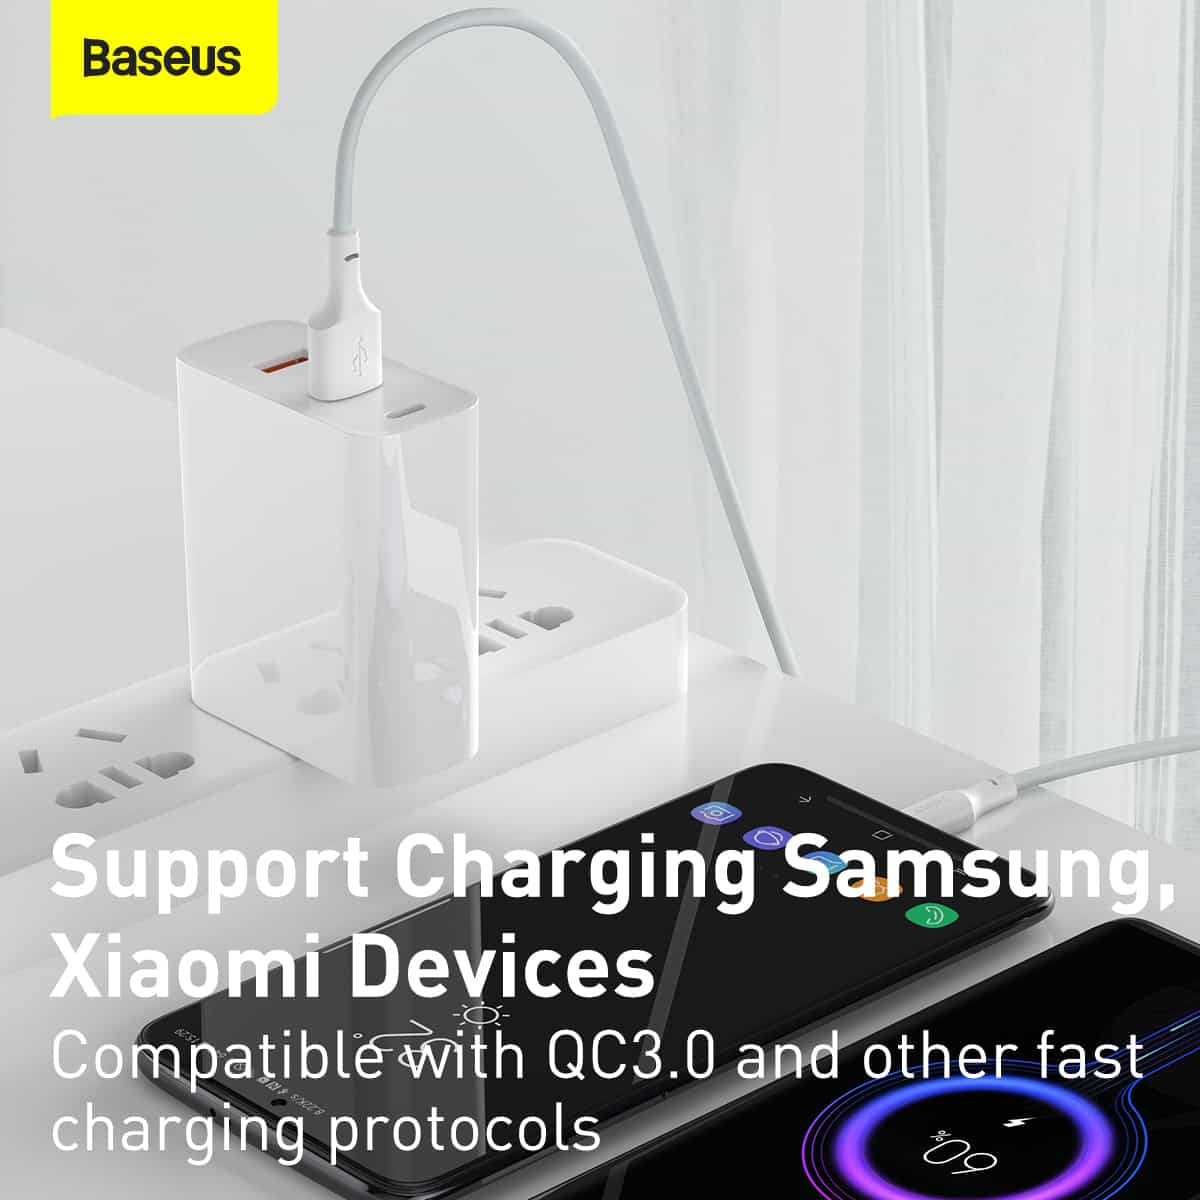 Bộ 02 cáp sạc nhanh Baseus Simple Wisdom (USB to Light-ning/ USB to Type-C/ USB to Micro Fast charge and Data Cable) dài 1.5M- Hàng chính hãng